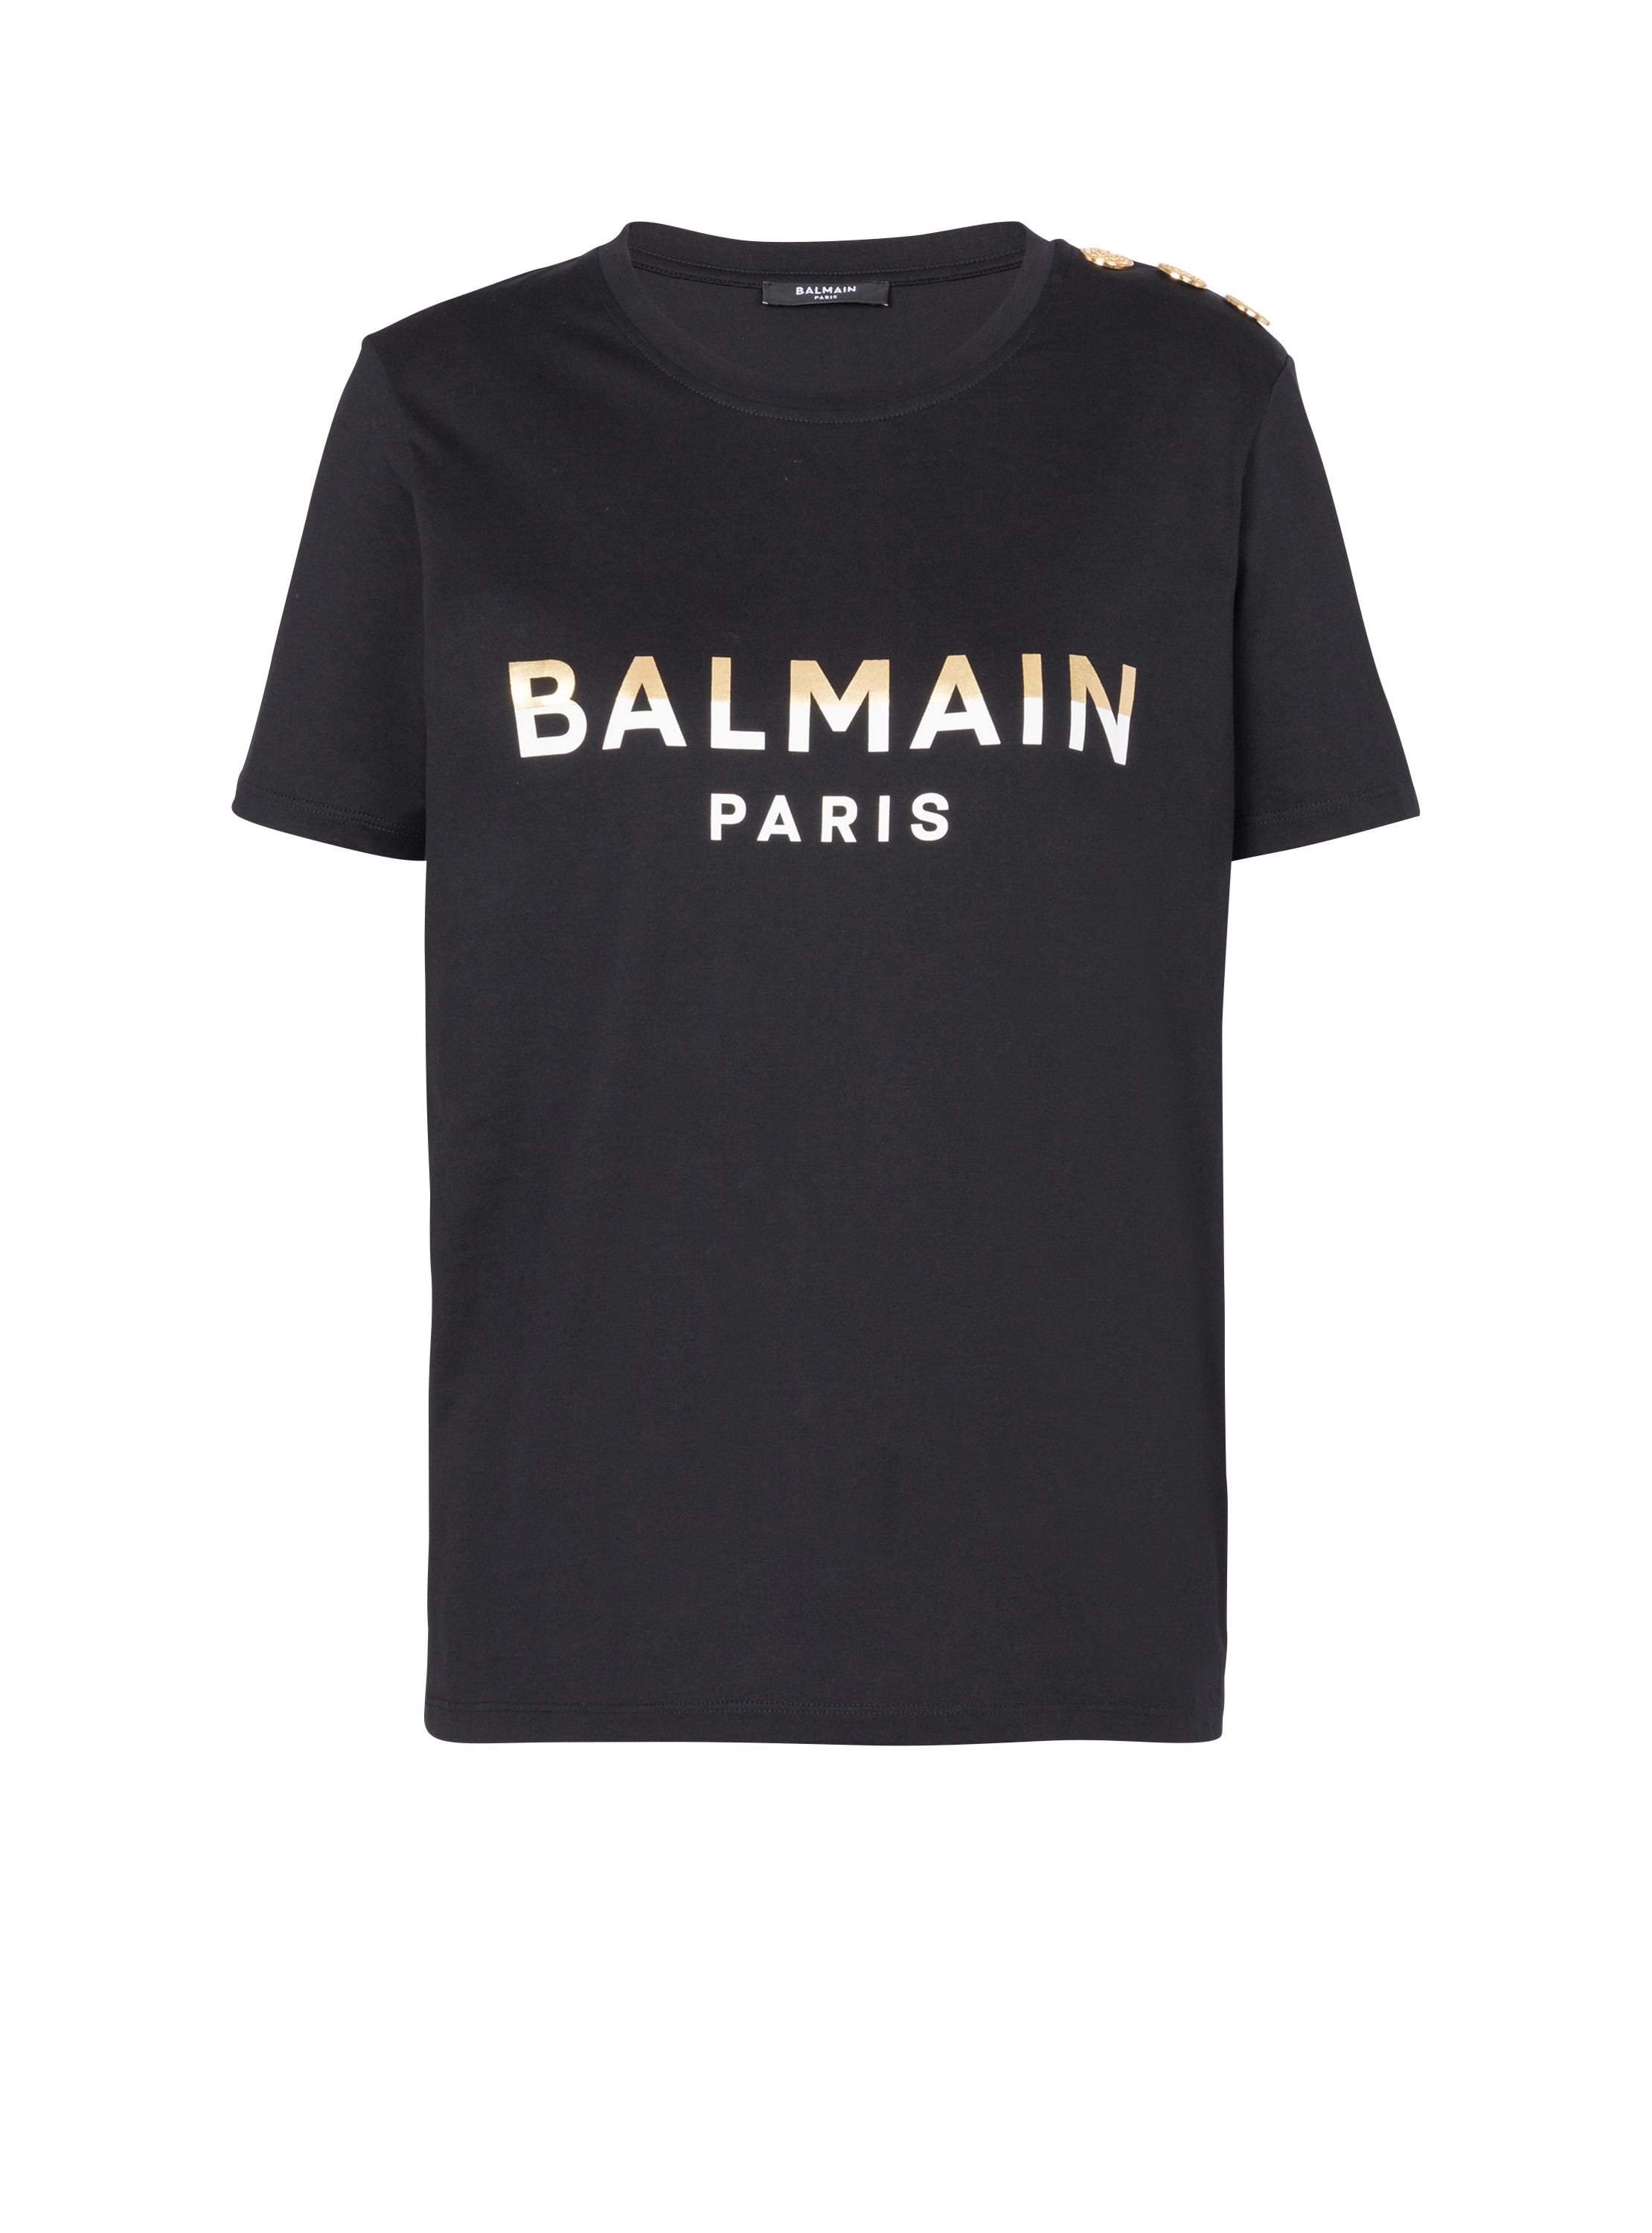 Camiseta corta con botones Balmain Paris